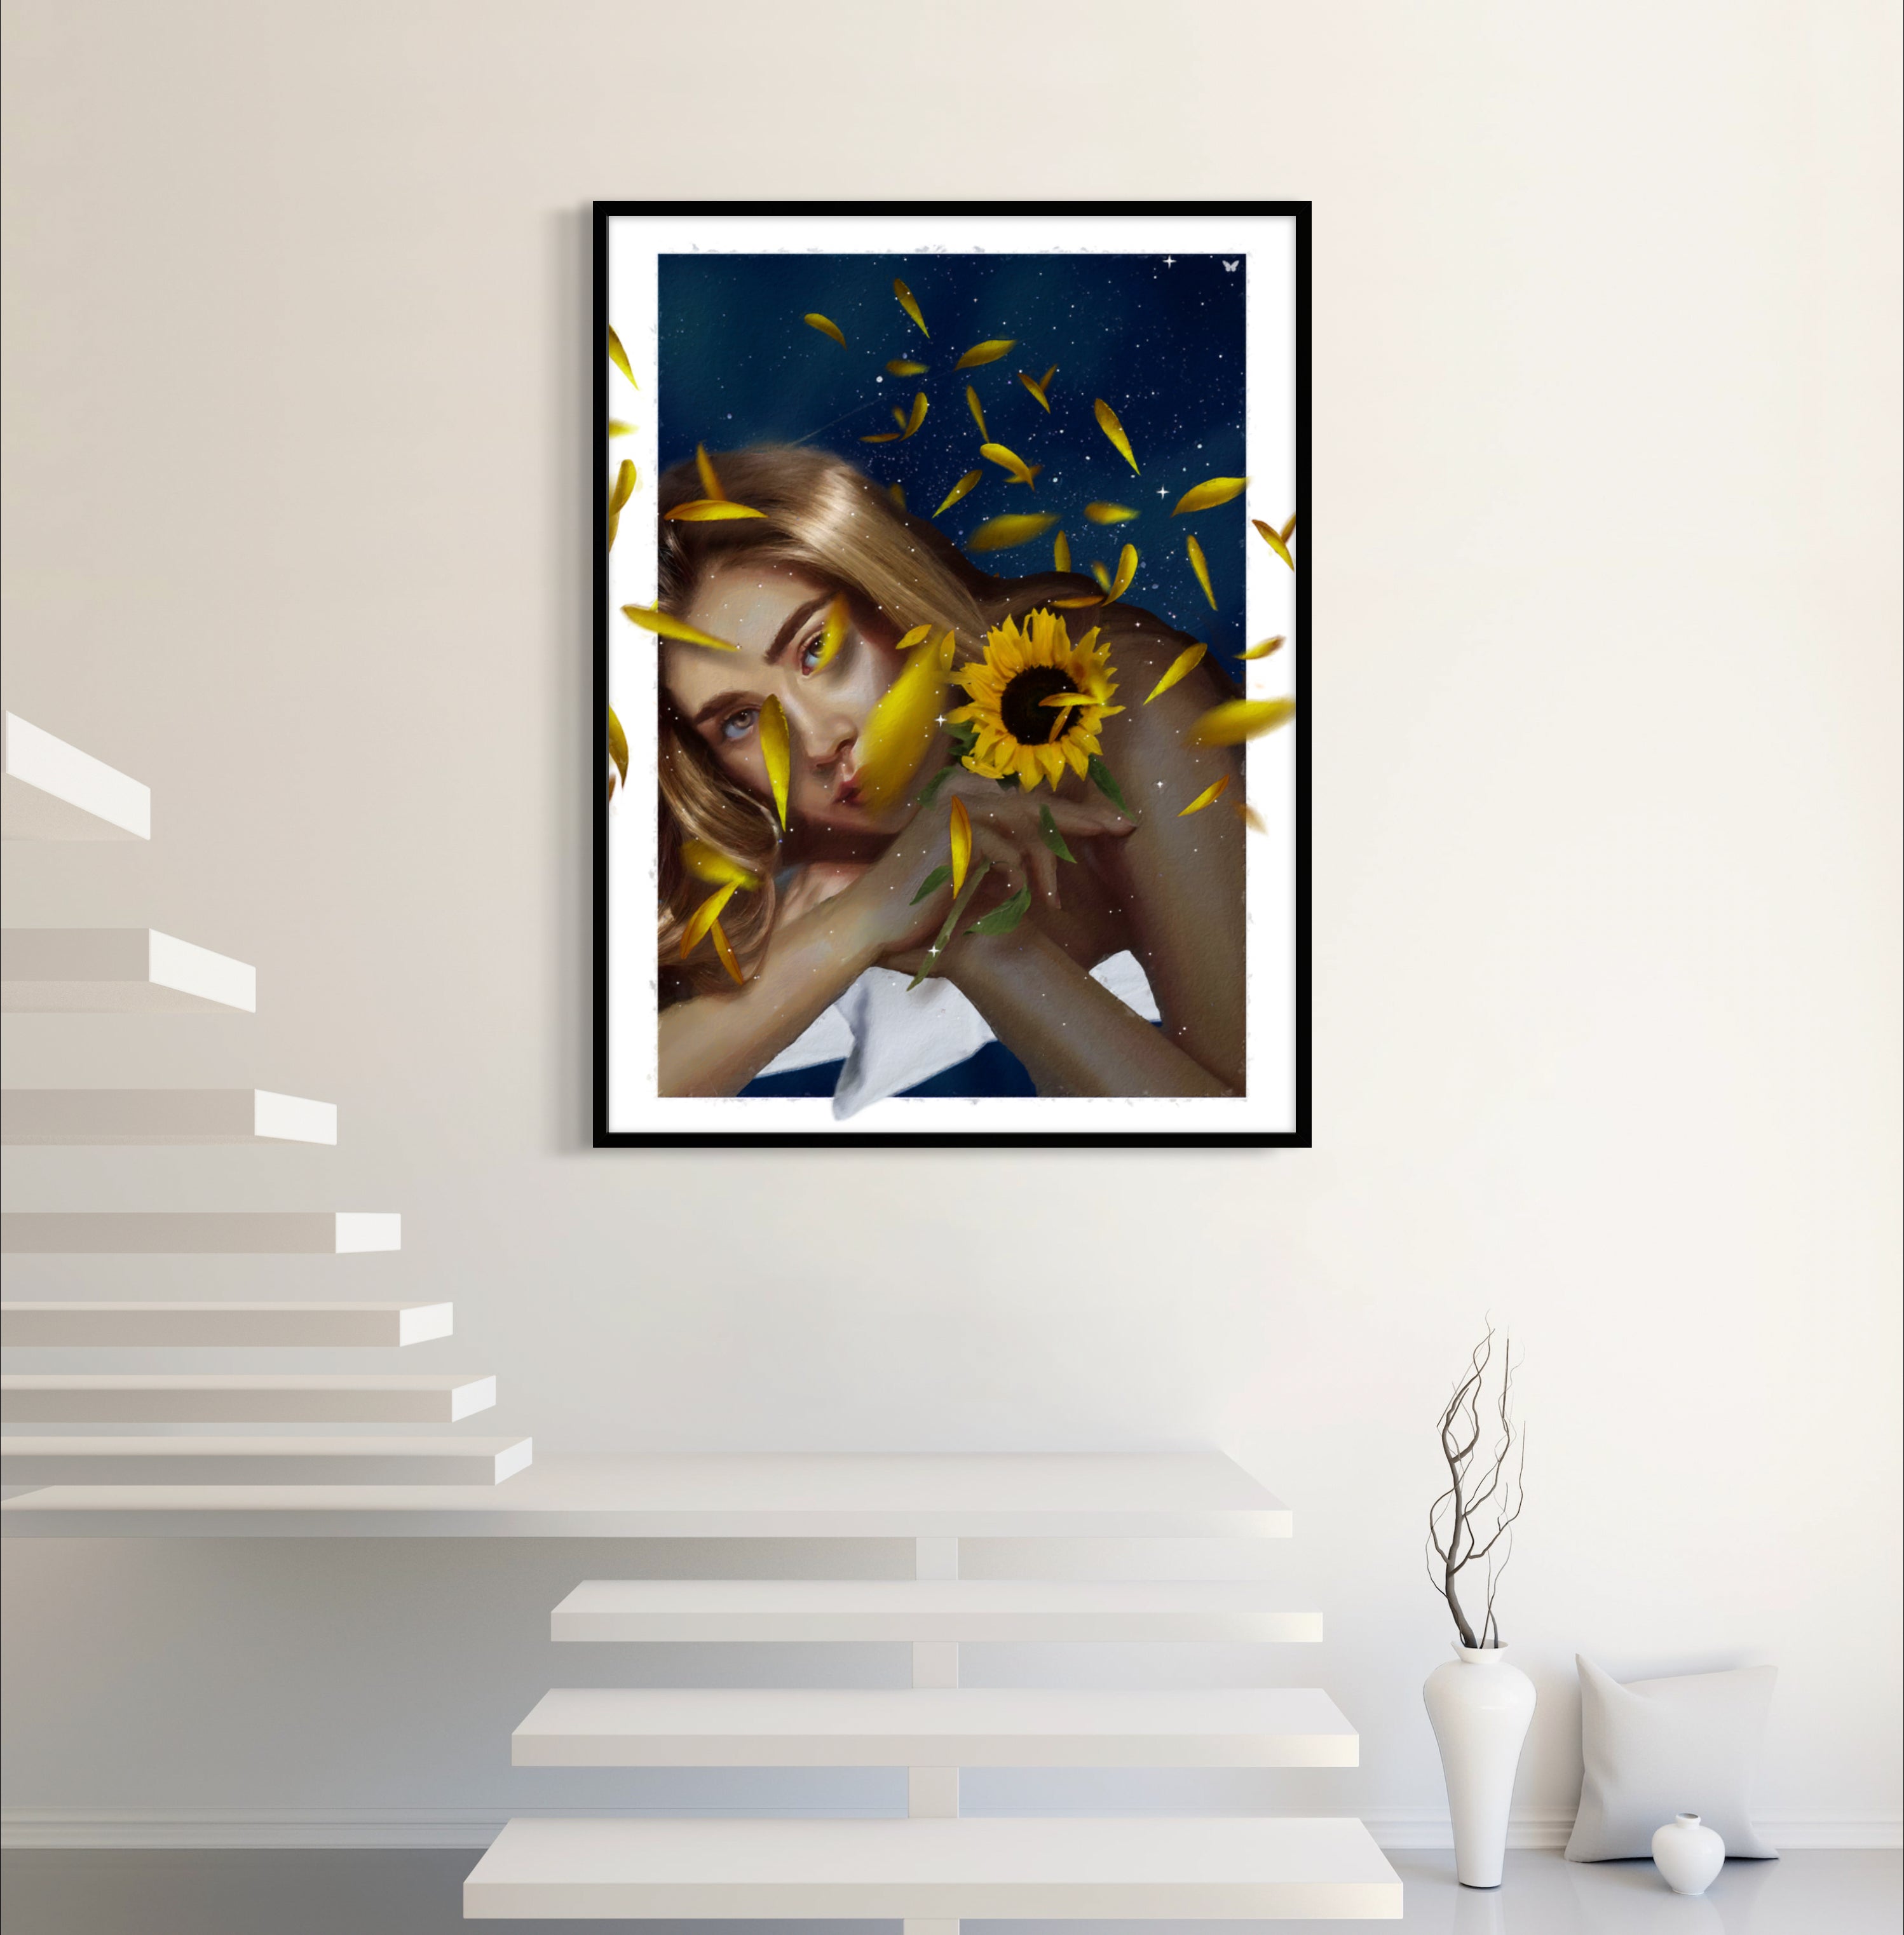 She's a Sunflower (Art Print)